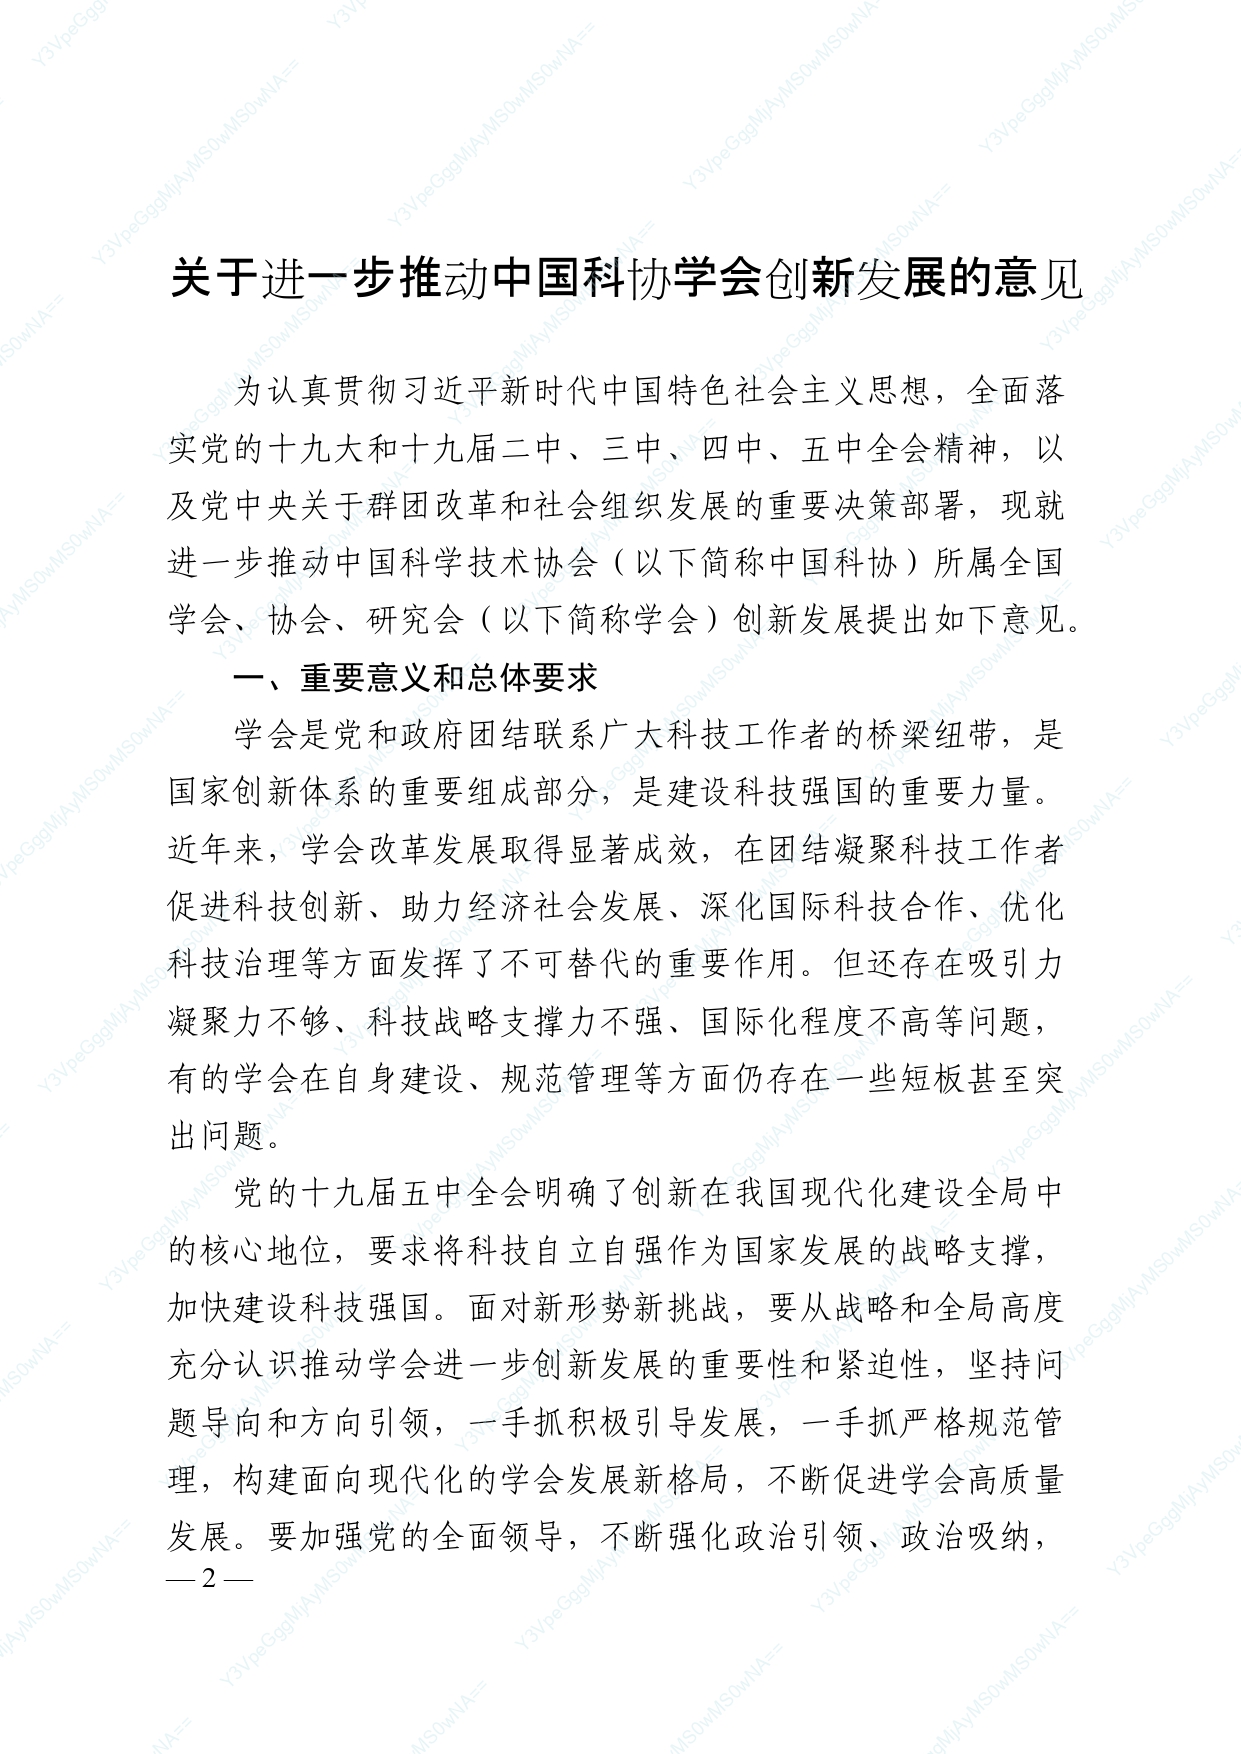 中国科协 民政部印发《关于进一步推动中国科协学会创新发展的意见》的通知_page-0002.jpg